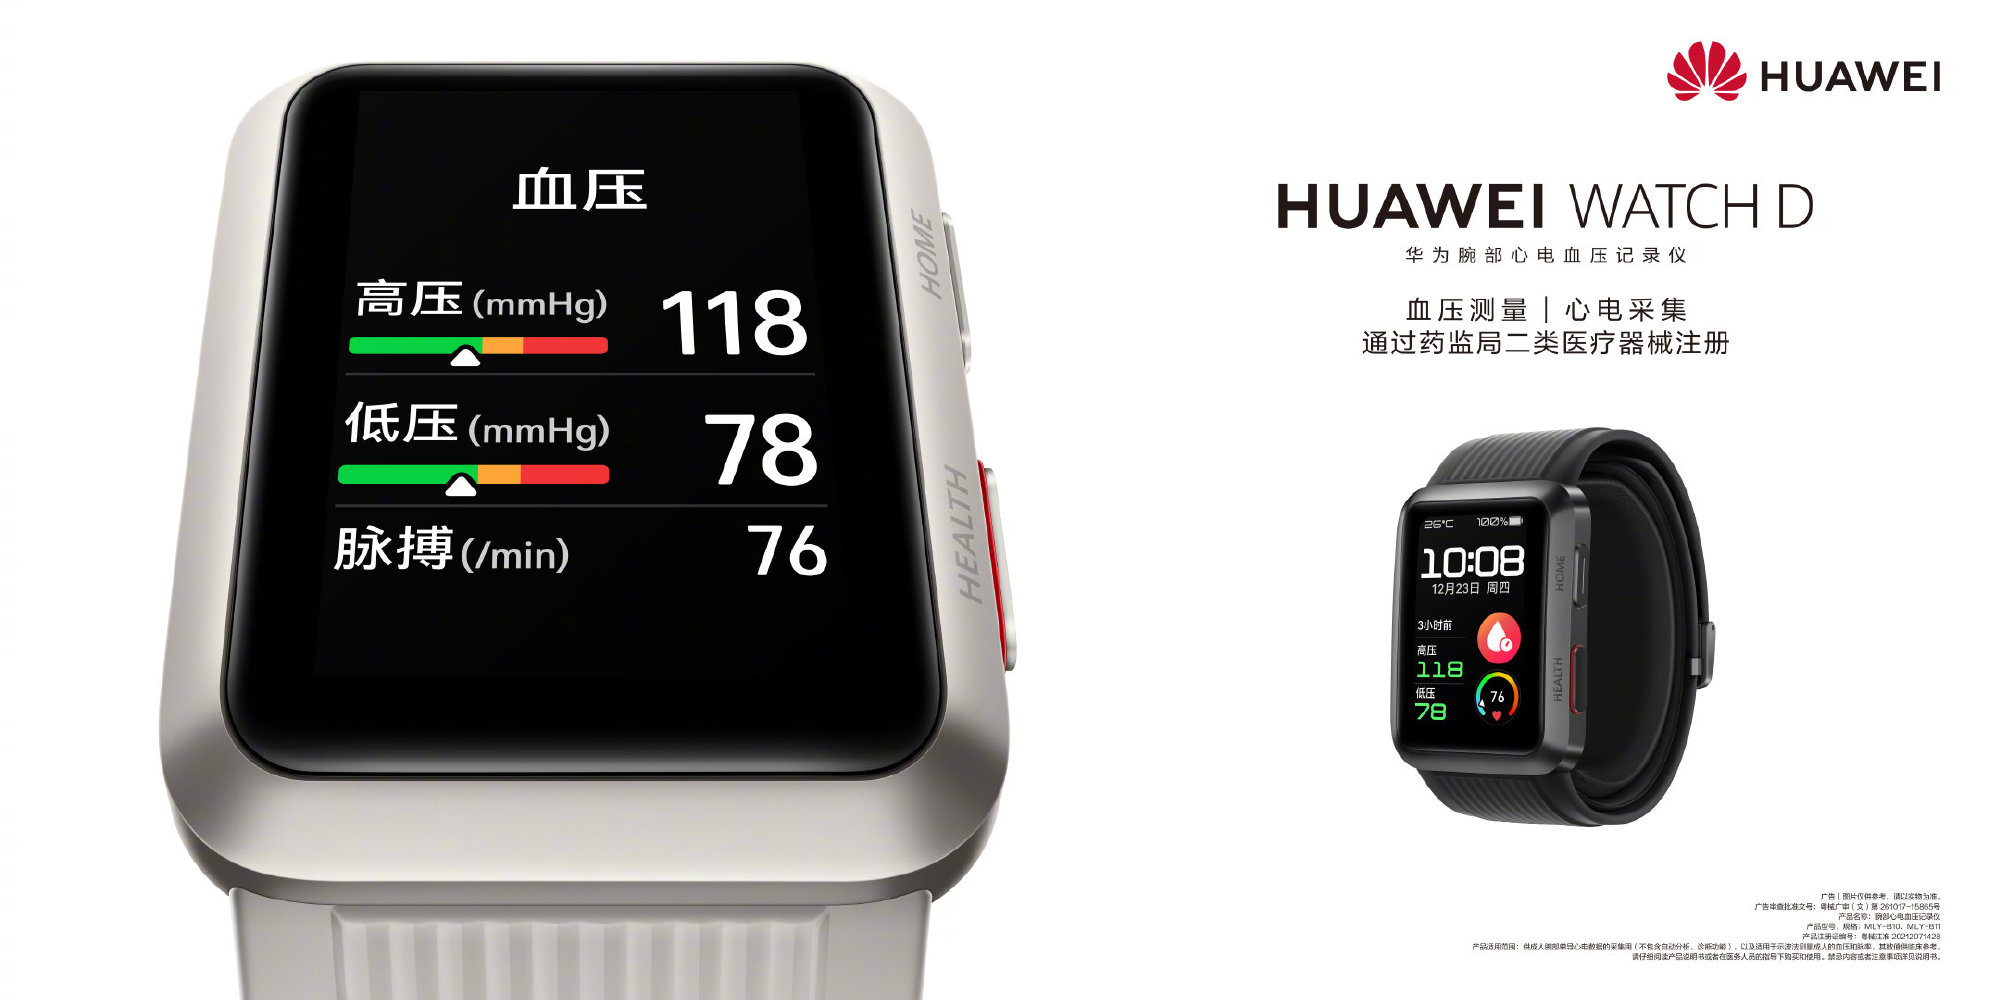 Huawei Watch D smartwatch